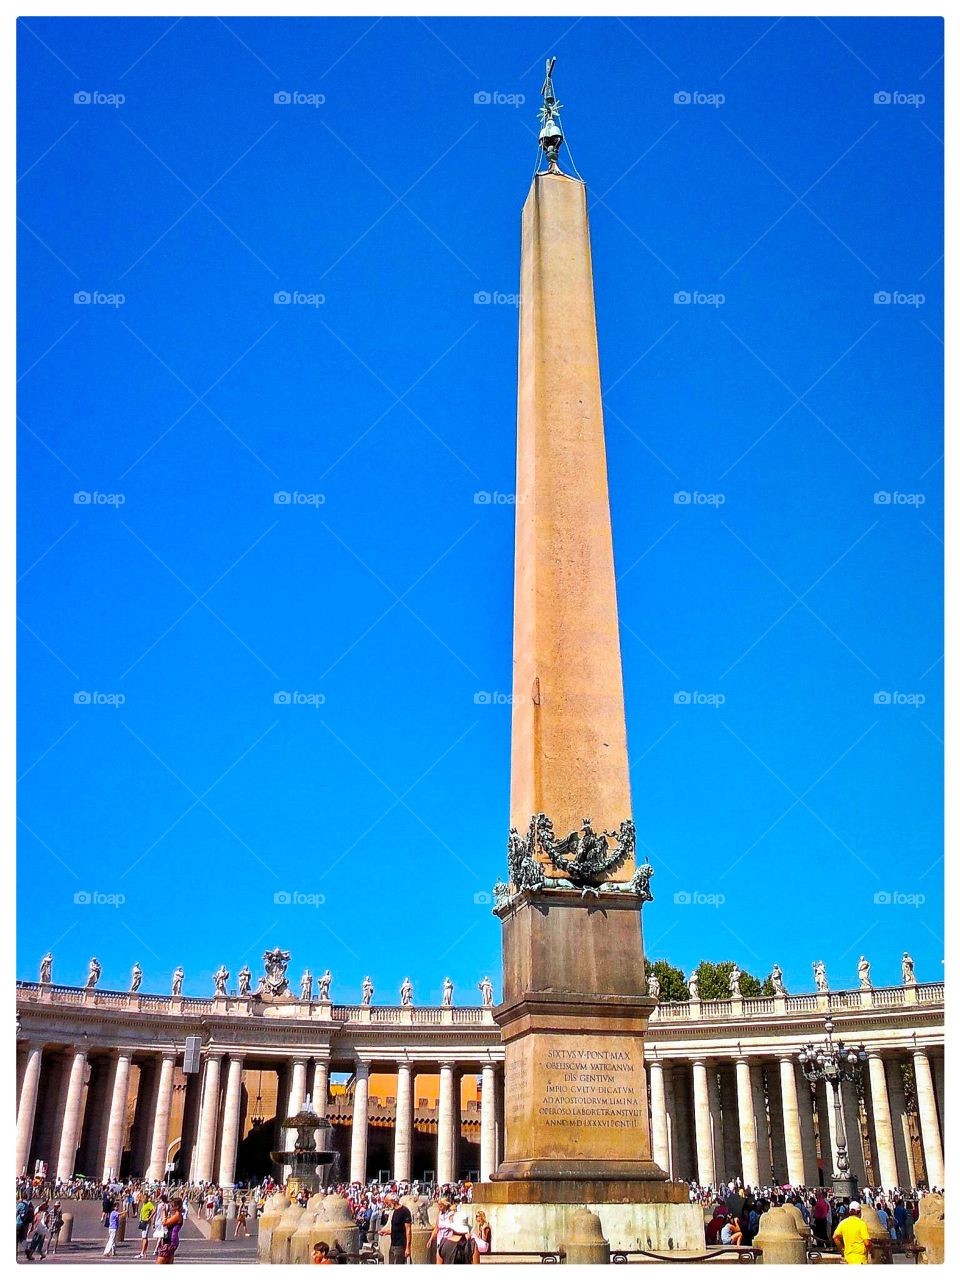 Vatican City
